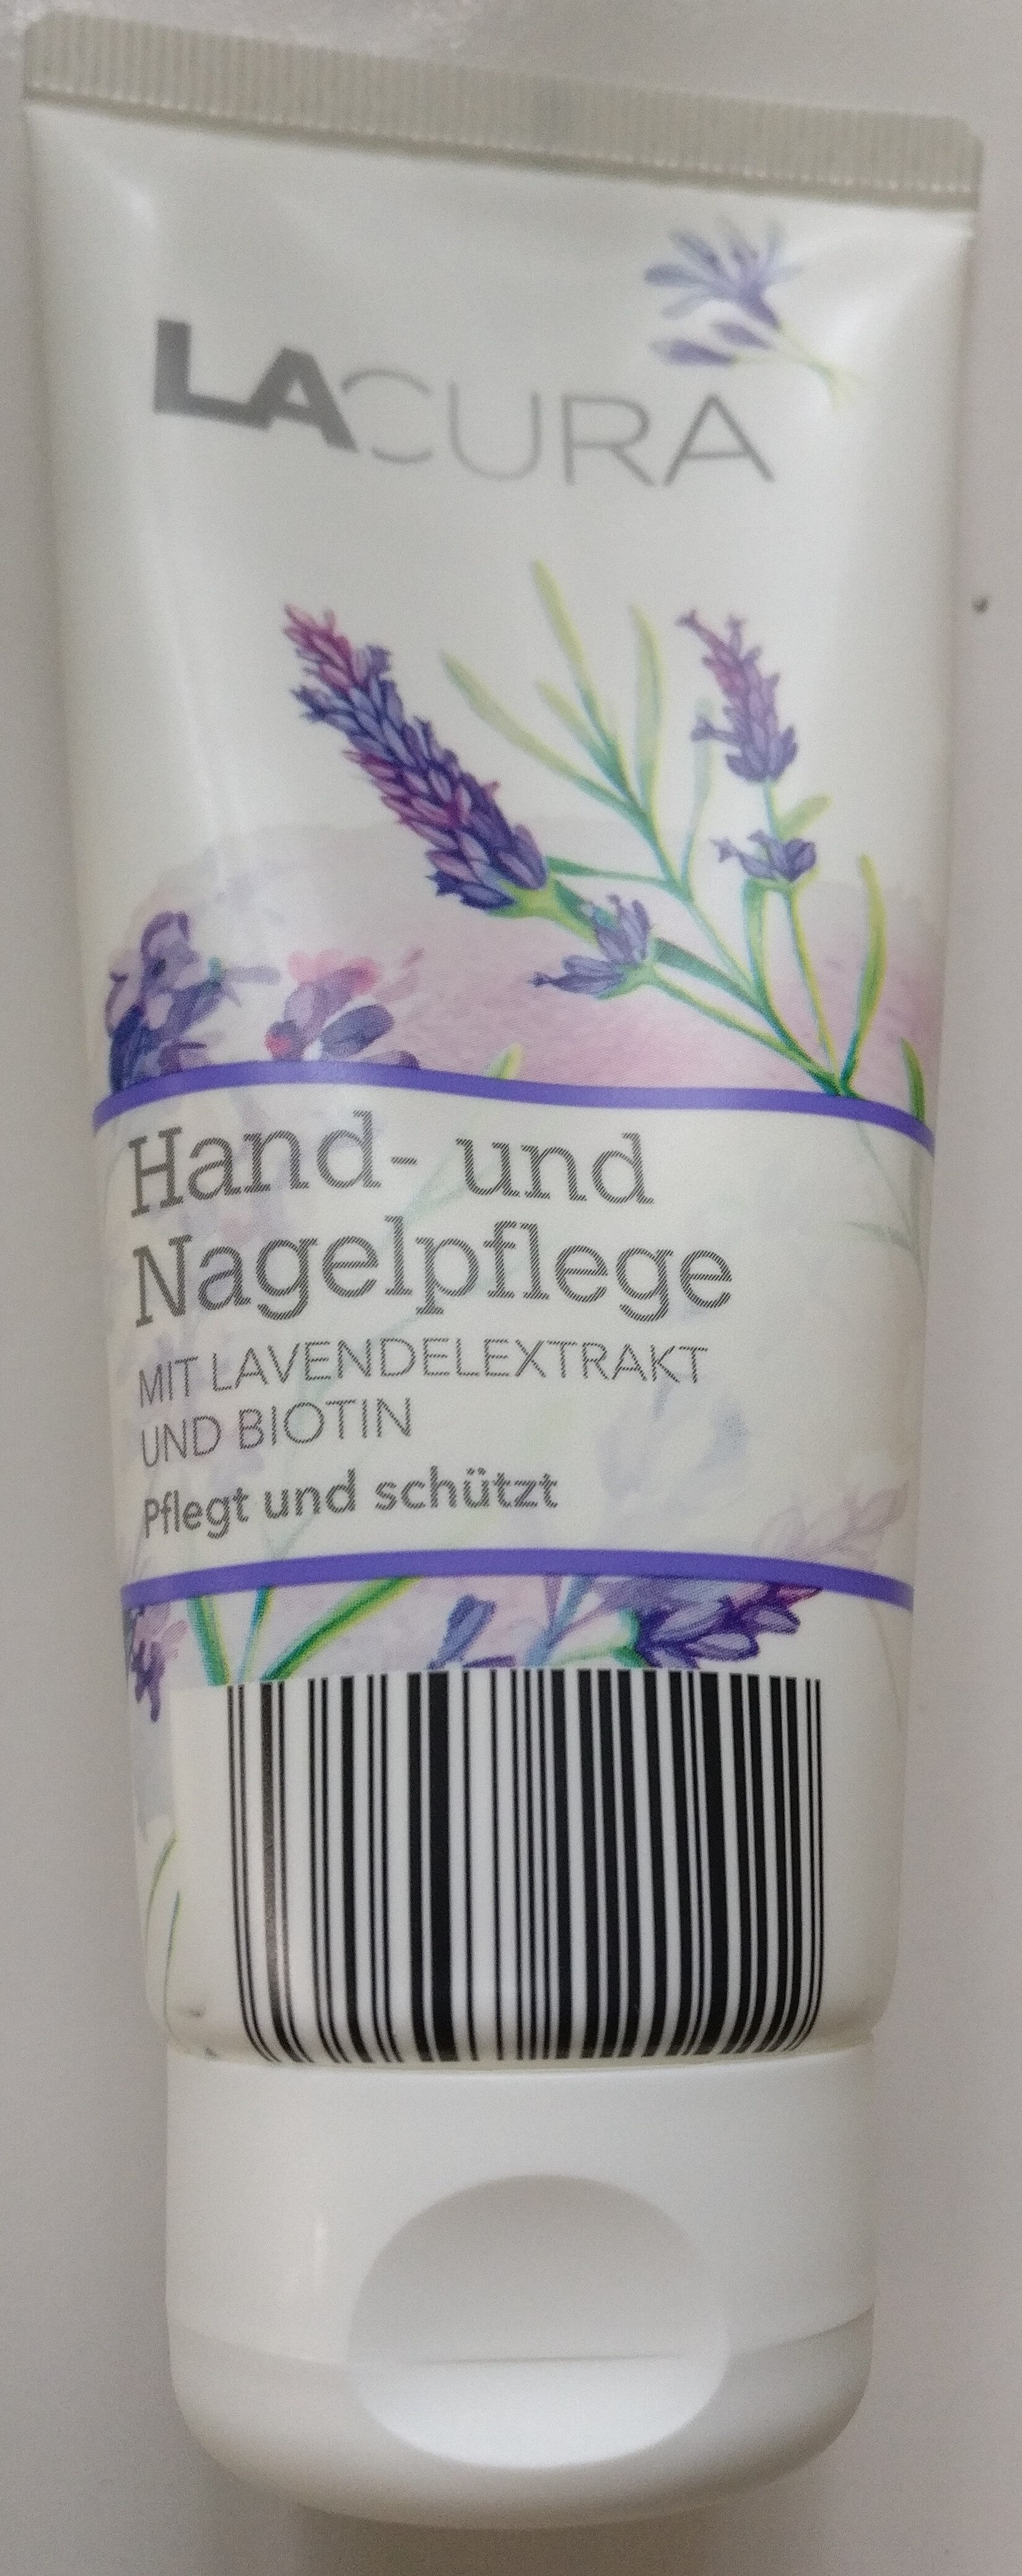 Hand- und Nagelpflege - Product - de